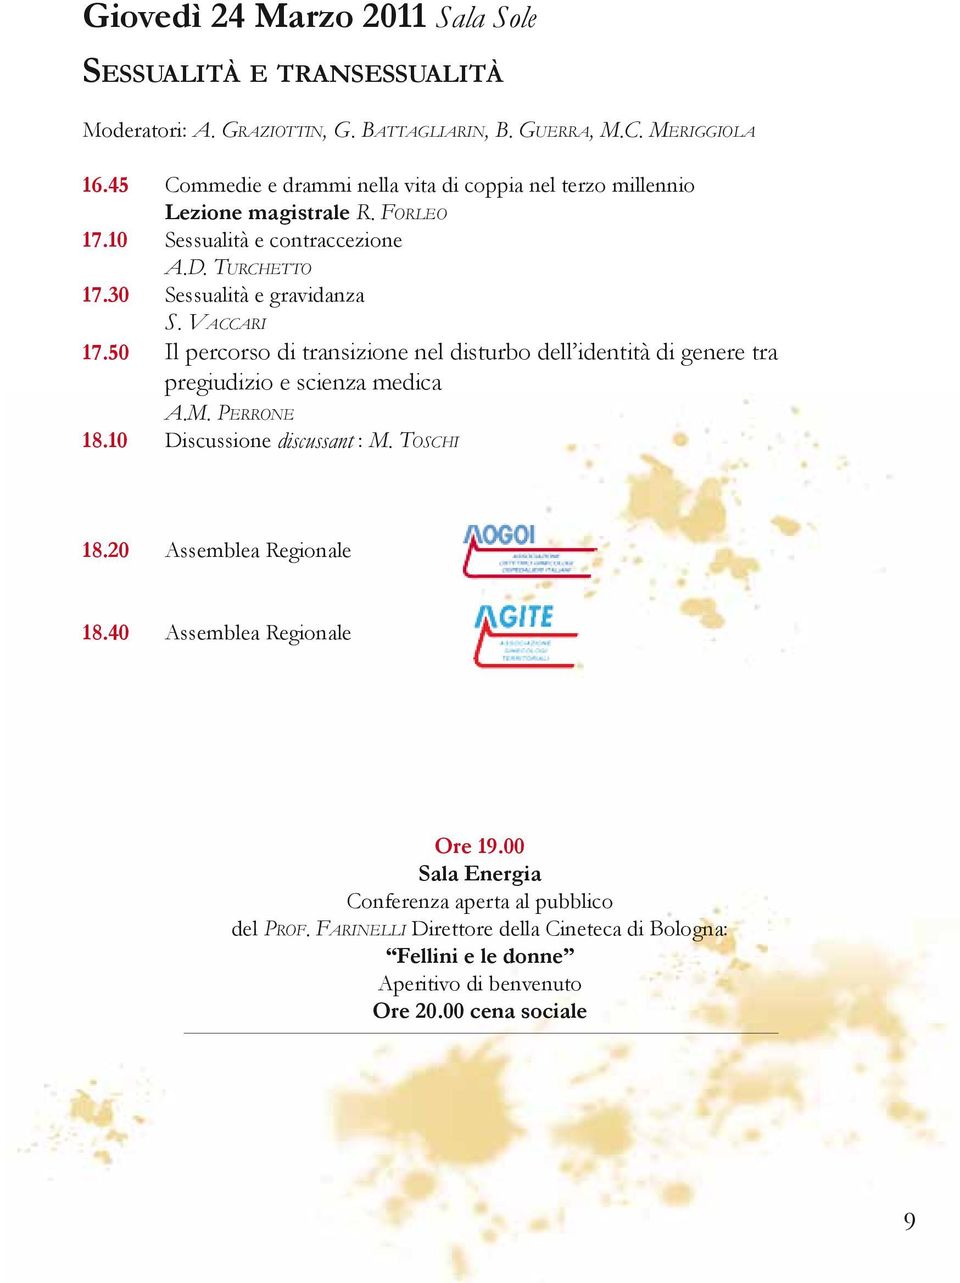 Vaccari 17.50 Il percorso di transizione nel disturbo dell identità di genere tra pregiudizio e scienza medica A.M. Perrone 18.10 Discussione discussant : M. Toschi 18.